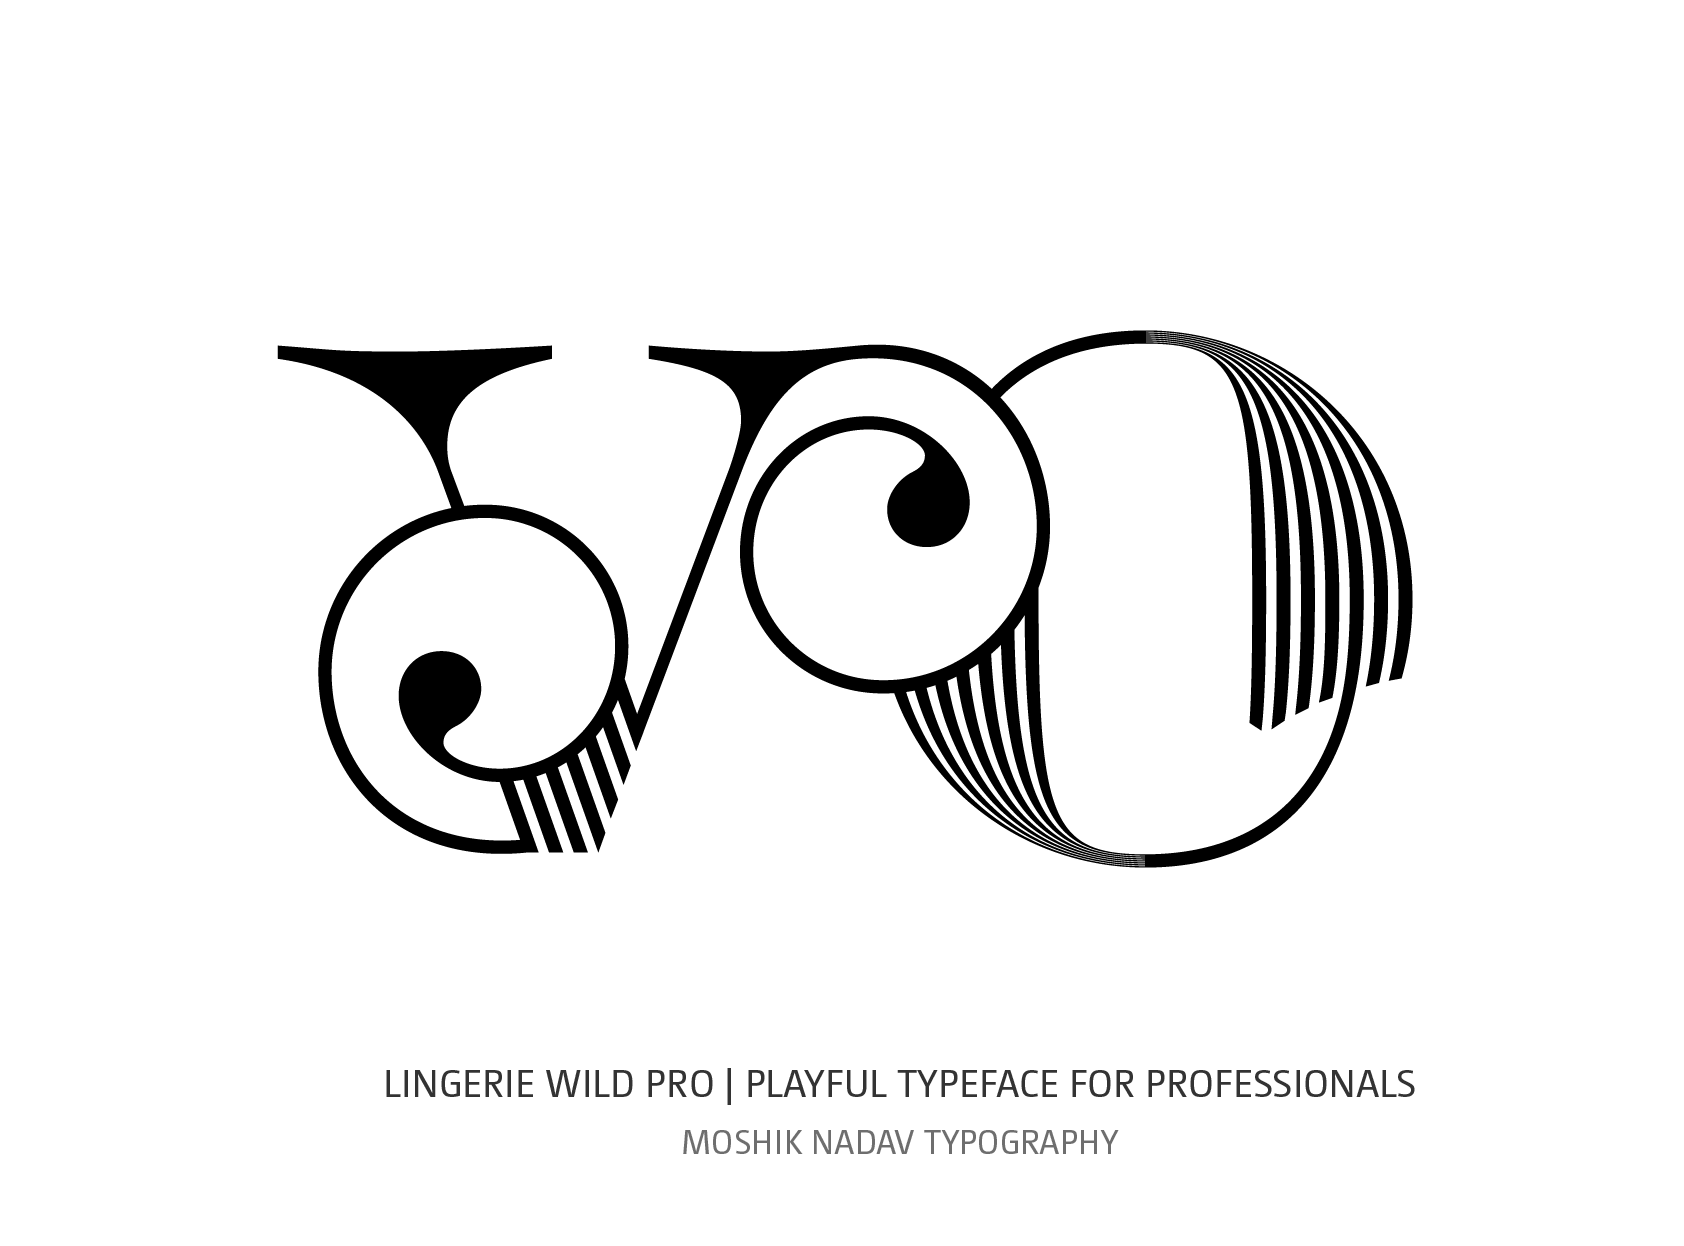 vo ligature design with Lingerie Wild Pro Typeface